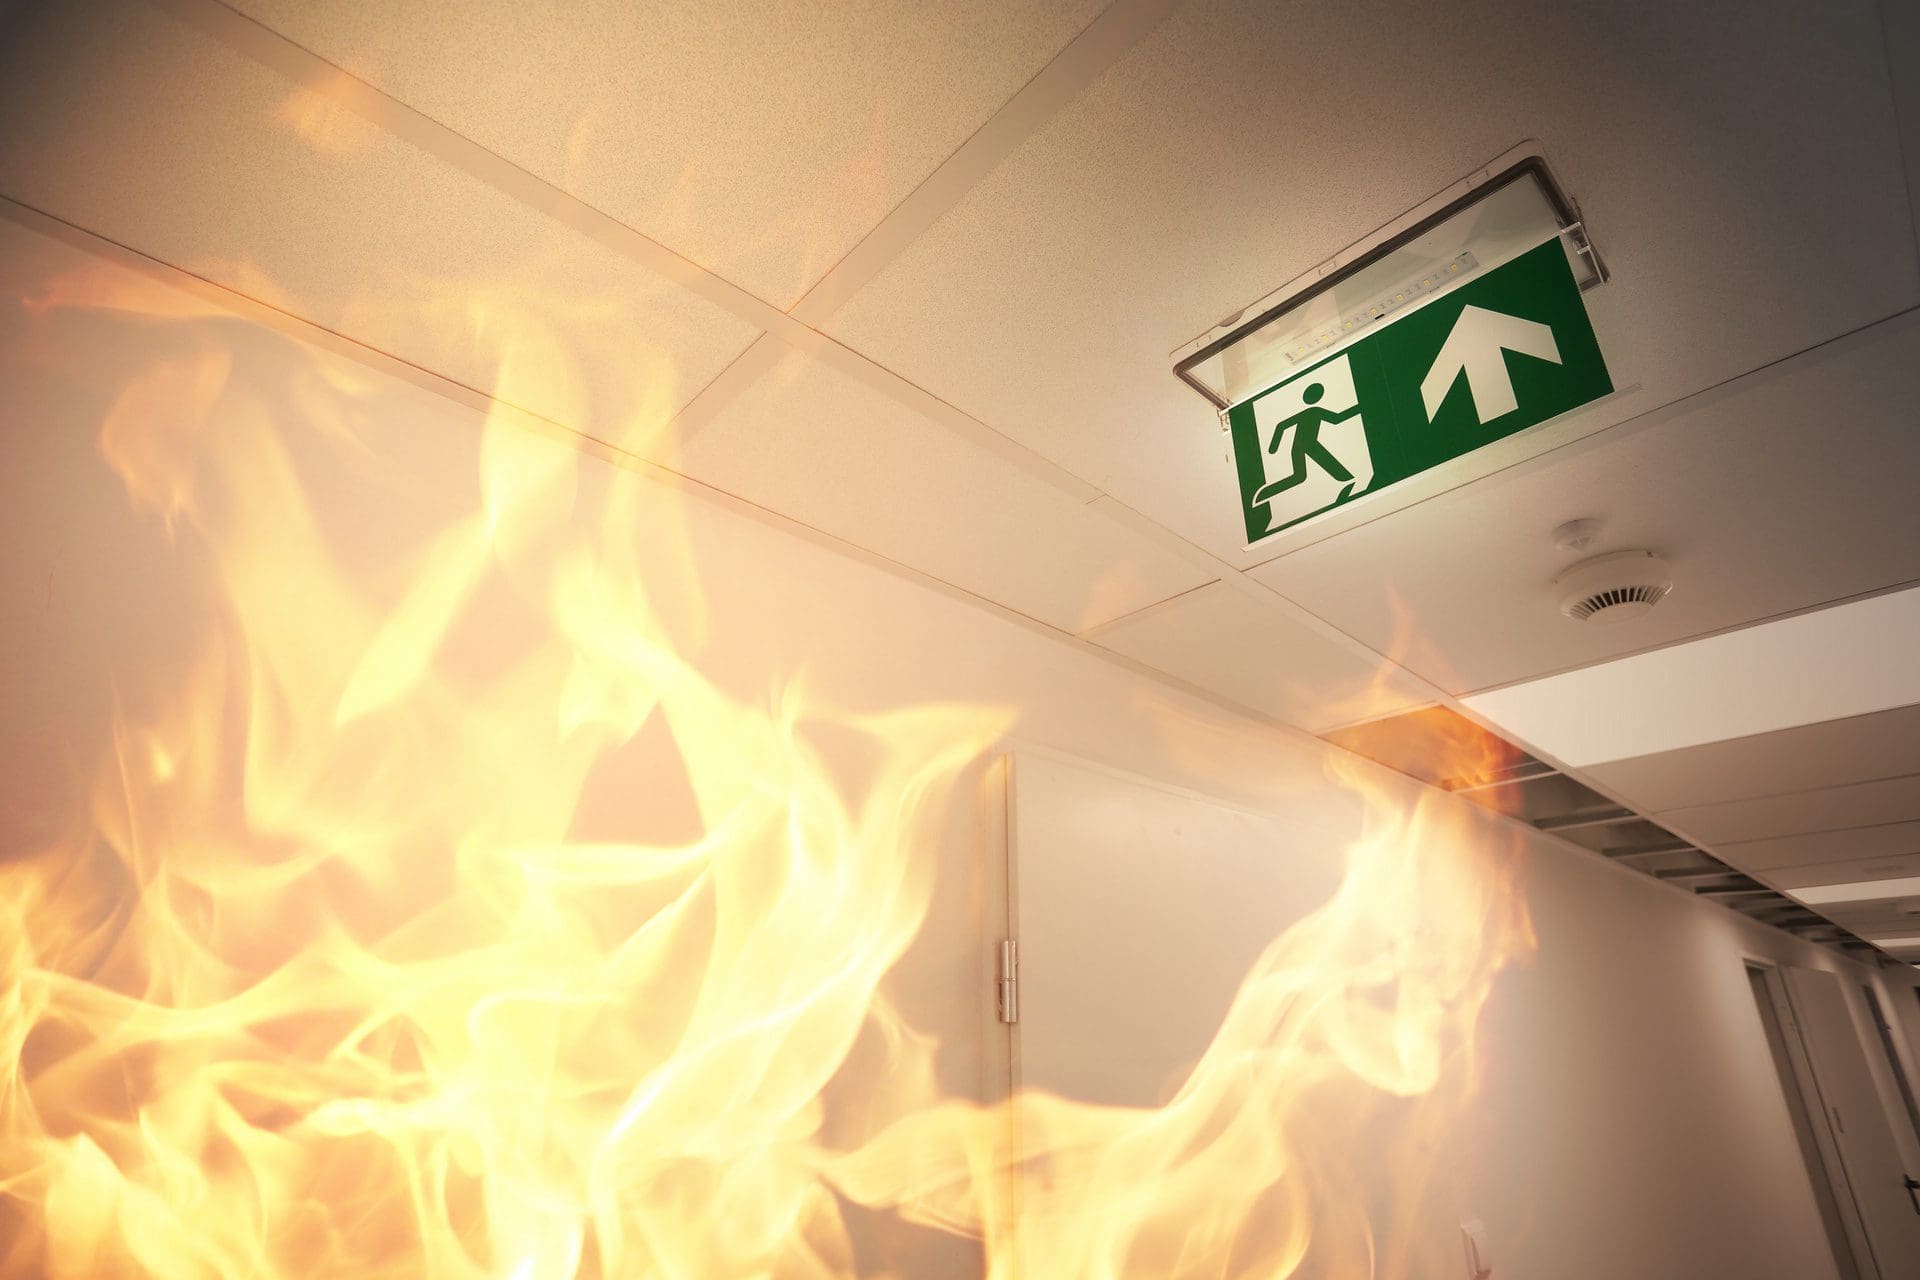 Verhalten bei Feuer / Bränden: Was tun, wenn es brennt? (© ambrozinio / stock.adobe.com)